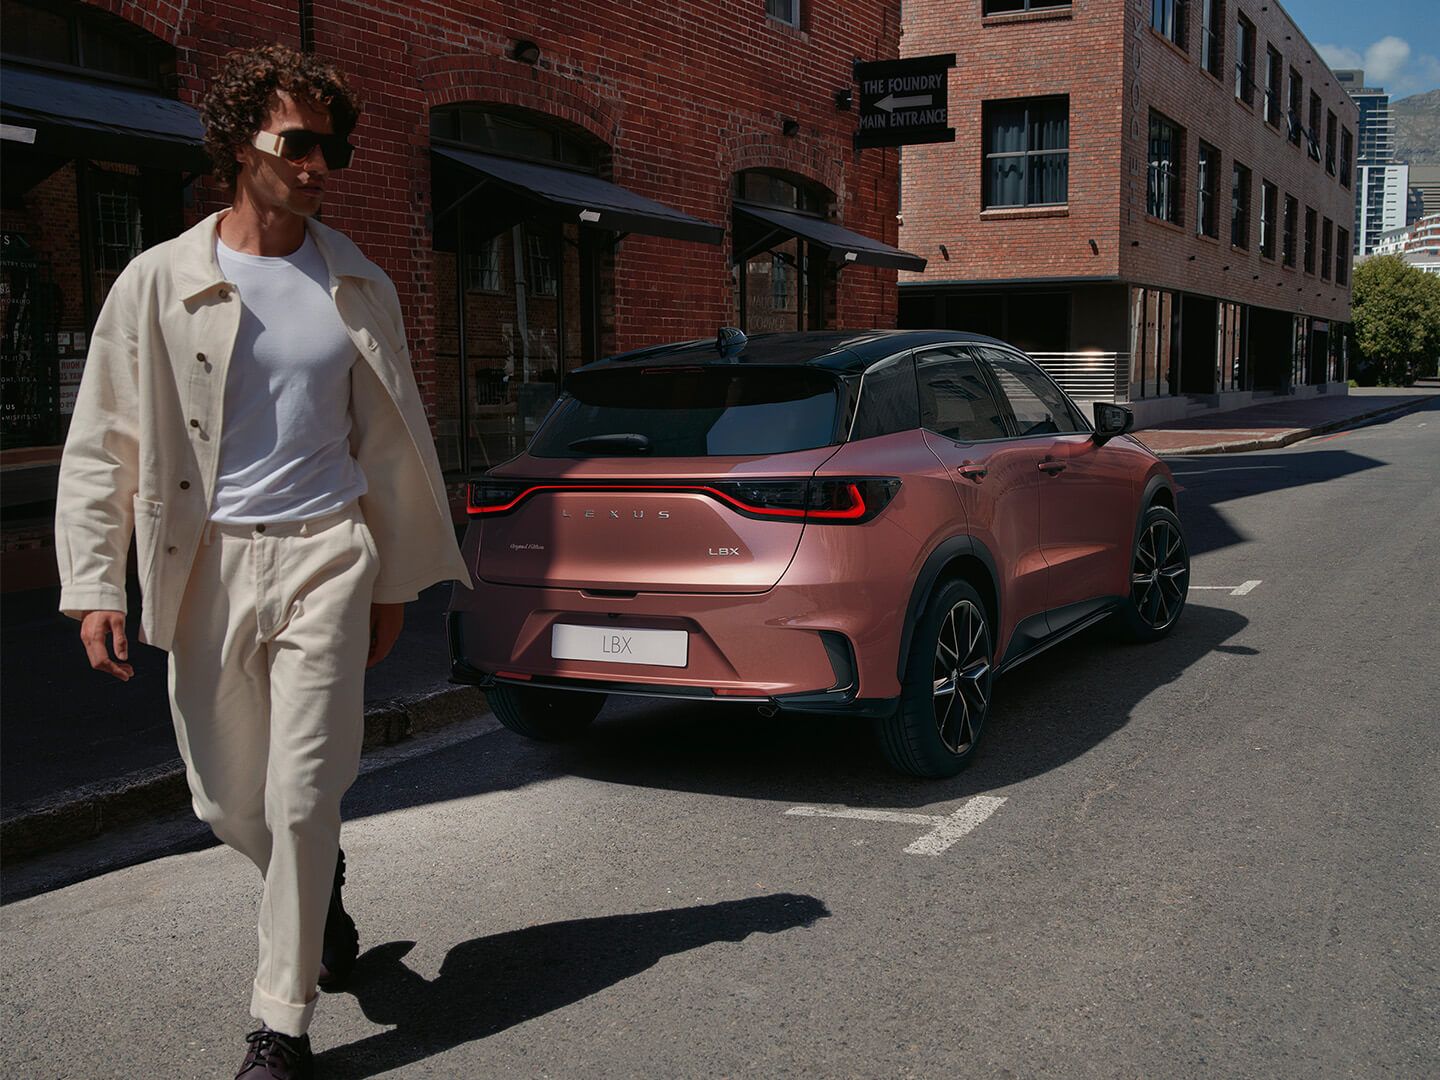 A man walking behind a brown Lexus LBX model